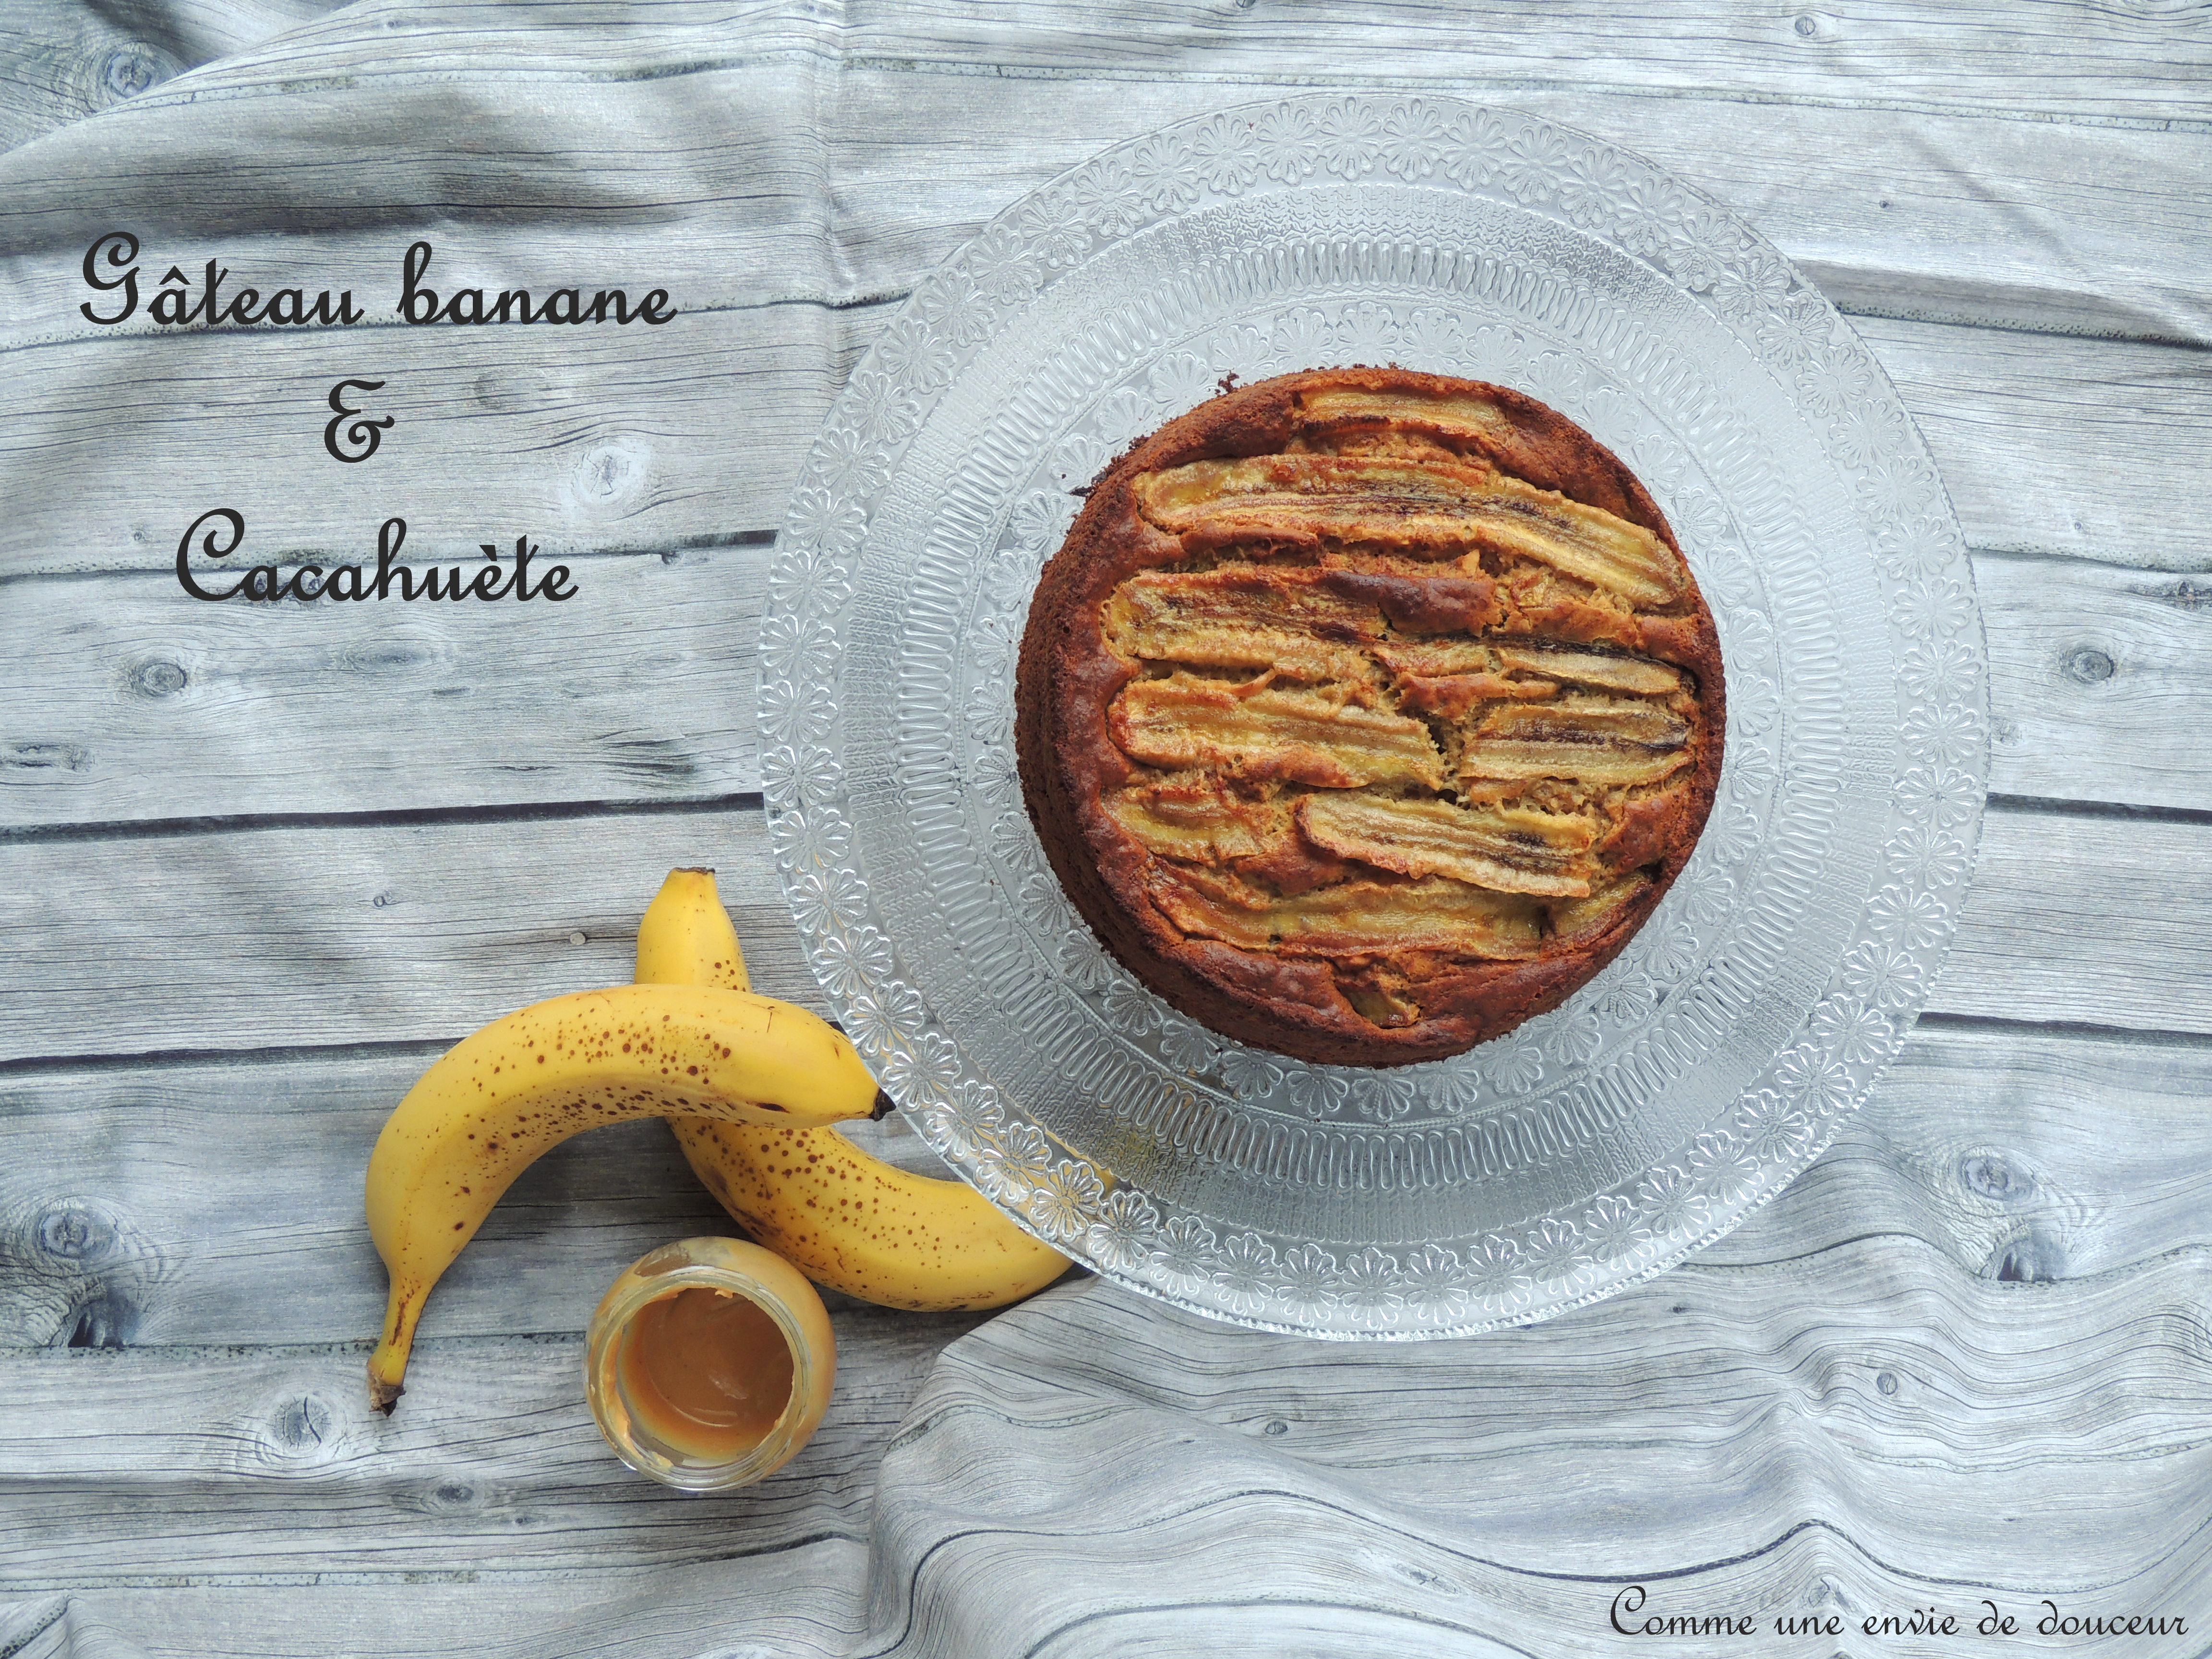 Gâteau à la banane & cacahuète – Banana & peanut cake